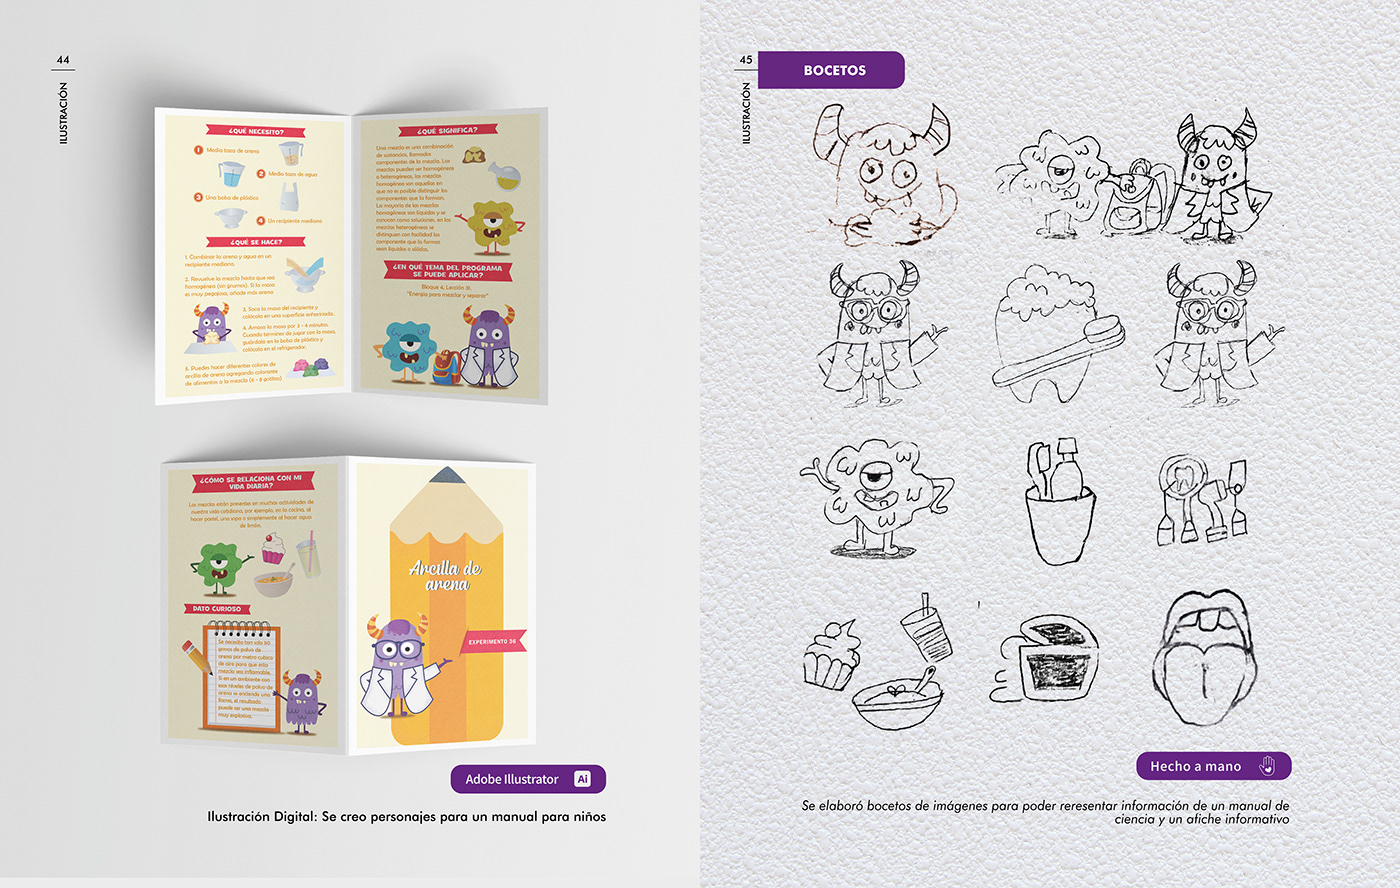 diseño gráfico publicidad ilustracion branding  Adobe Photoshop Adobe Indesing Corel Draw campañas Fotografia Packaging